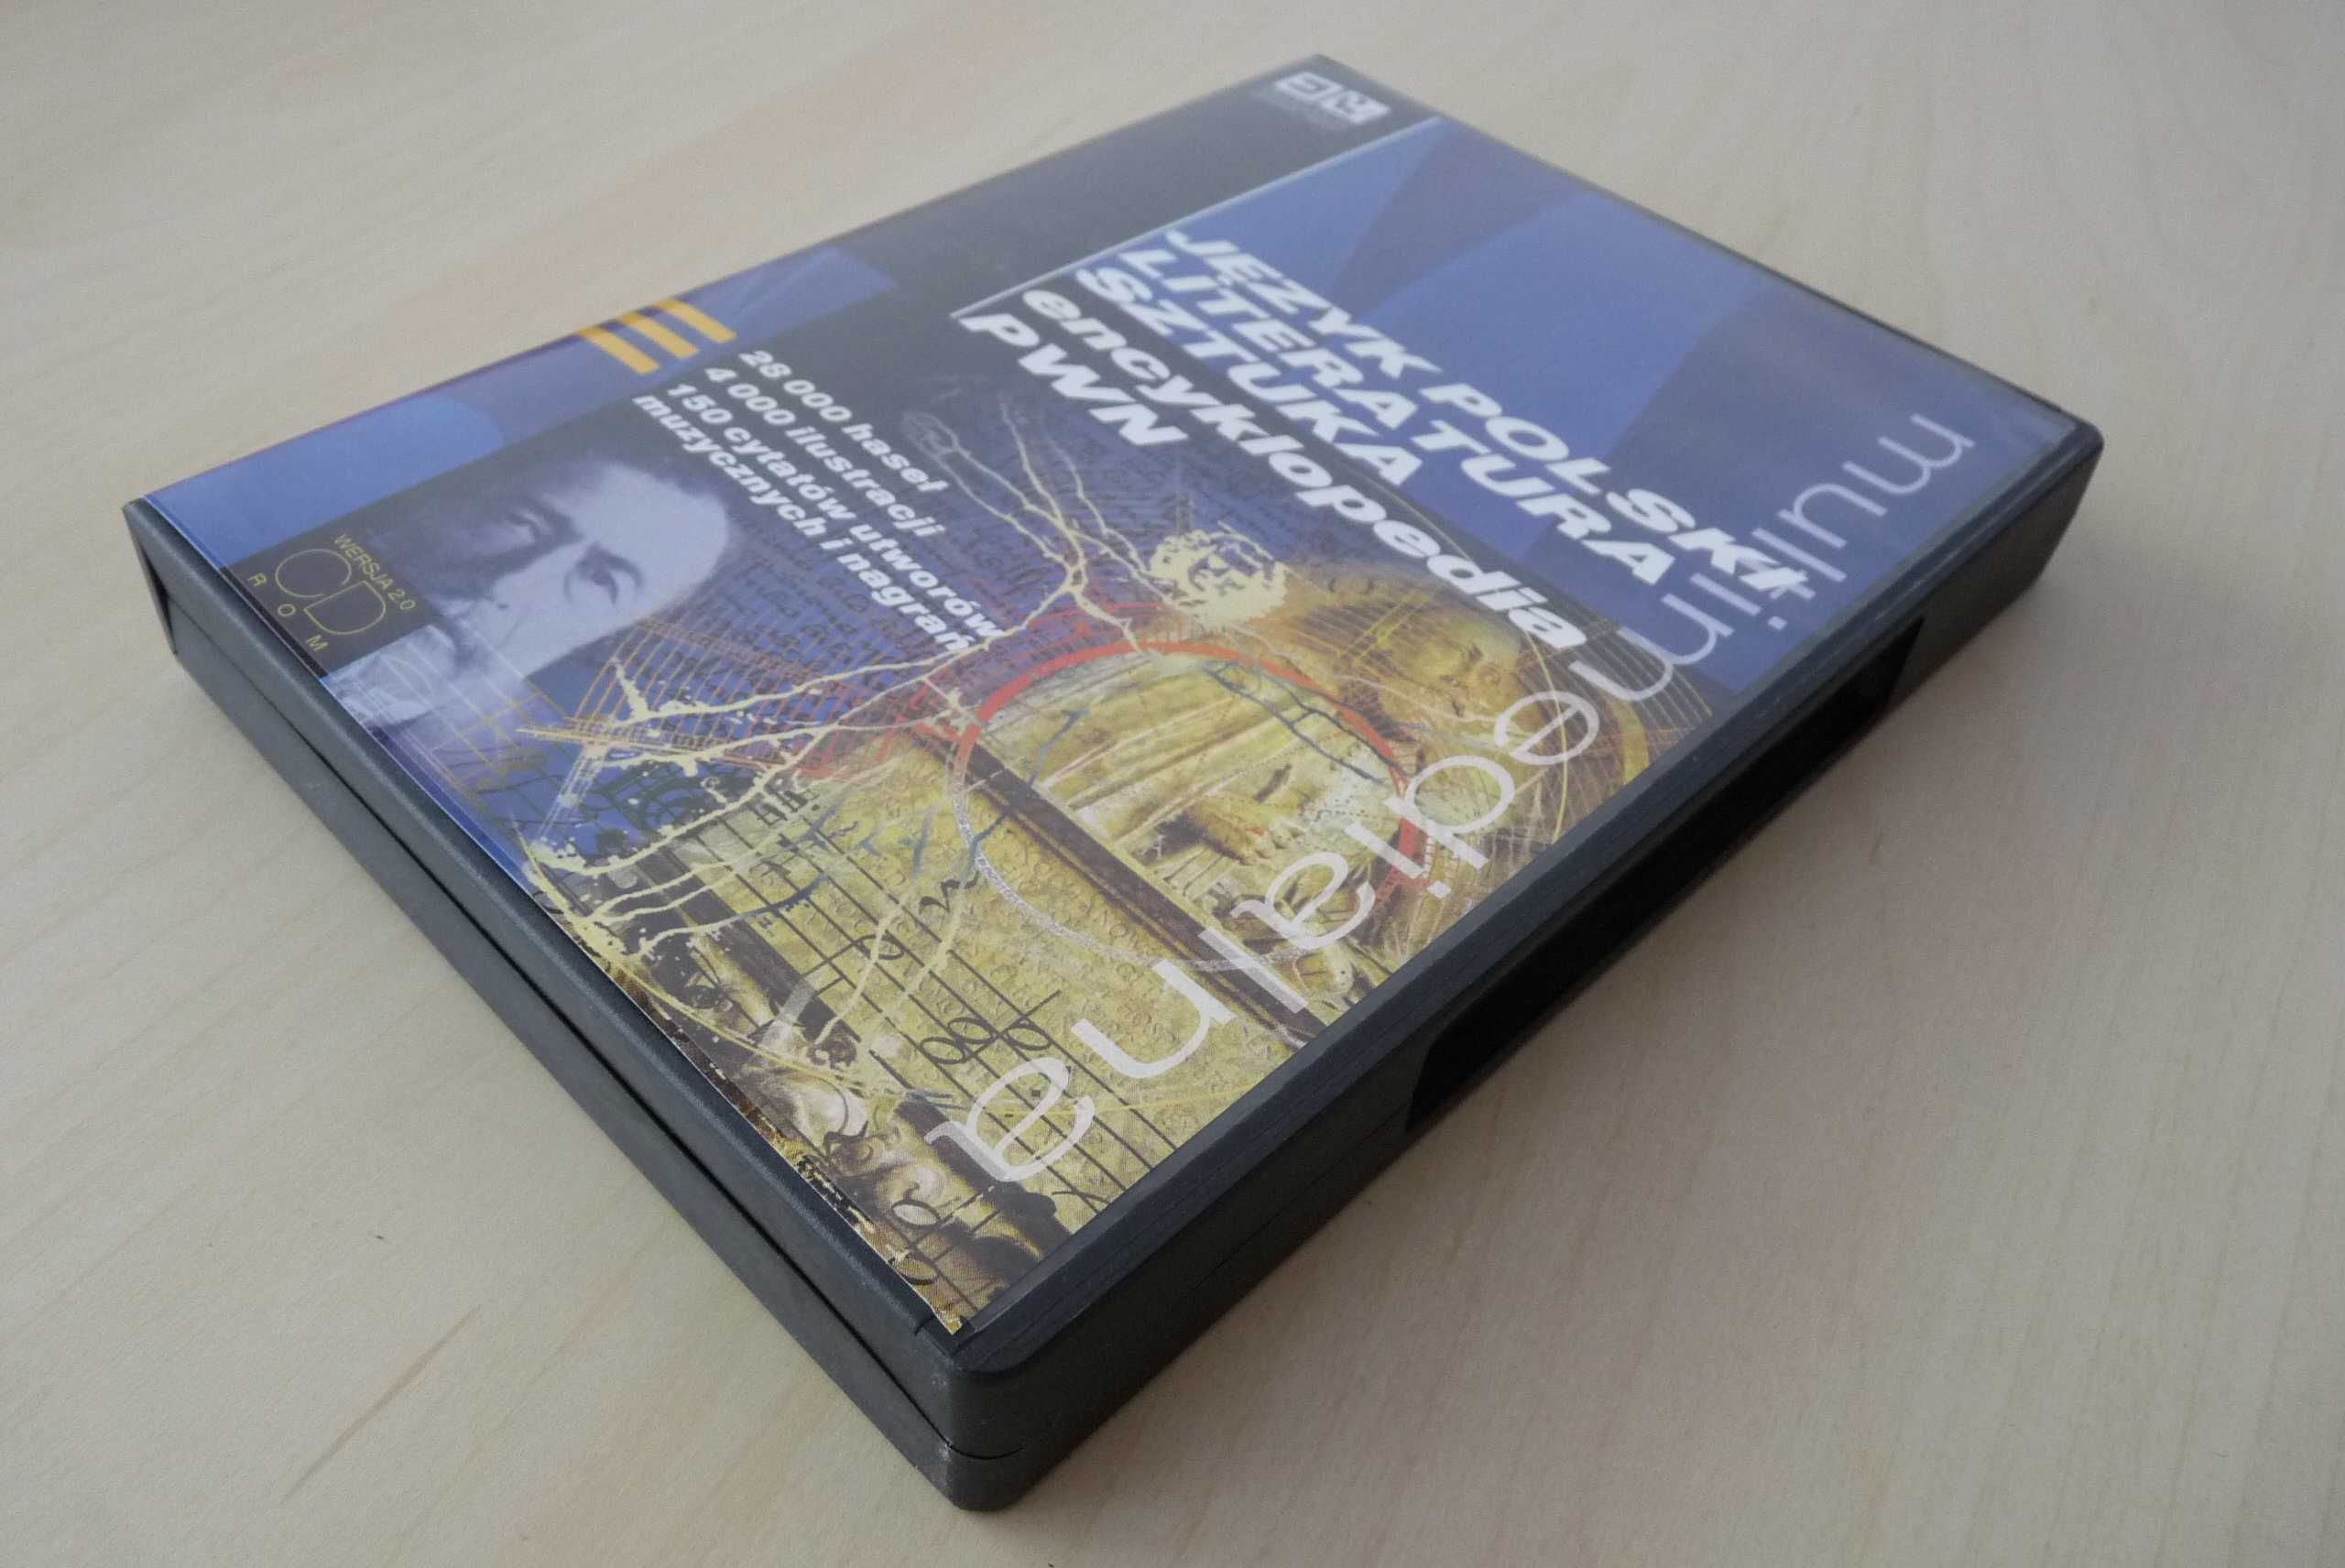 Multimedialna encyklopedia PWN (płyta CD)